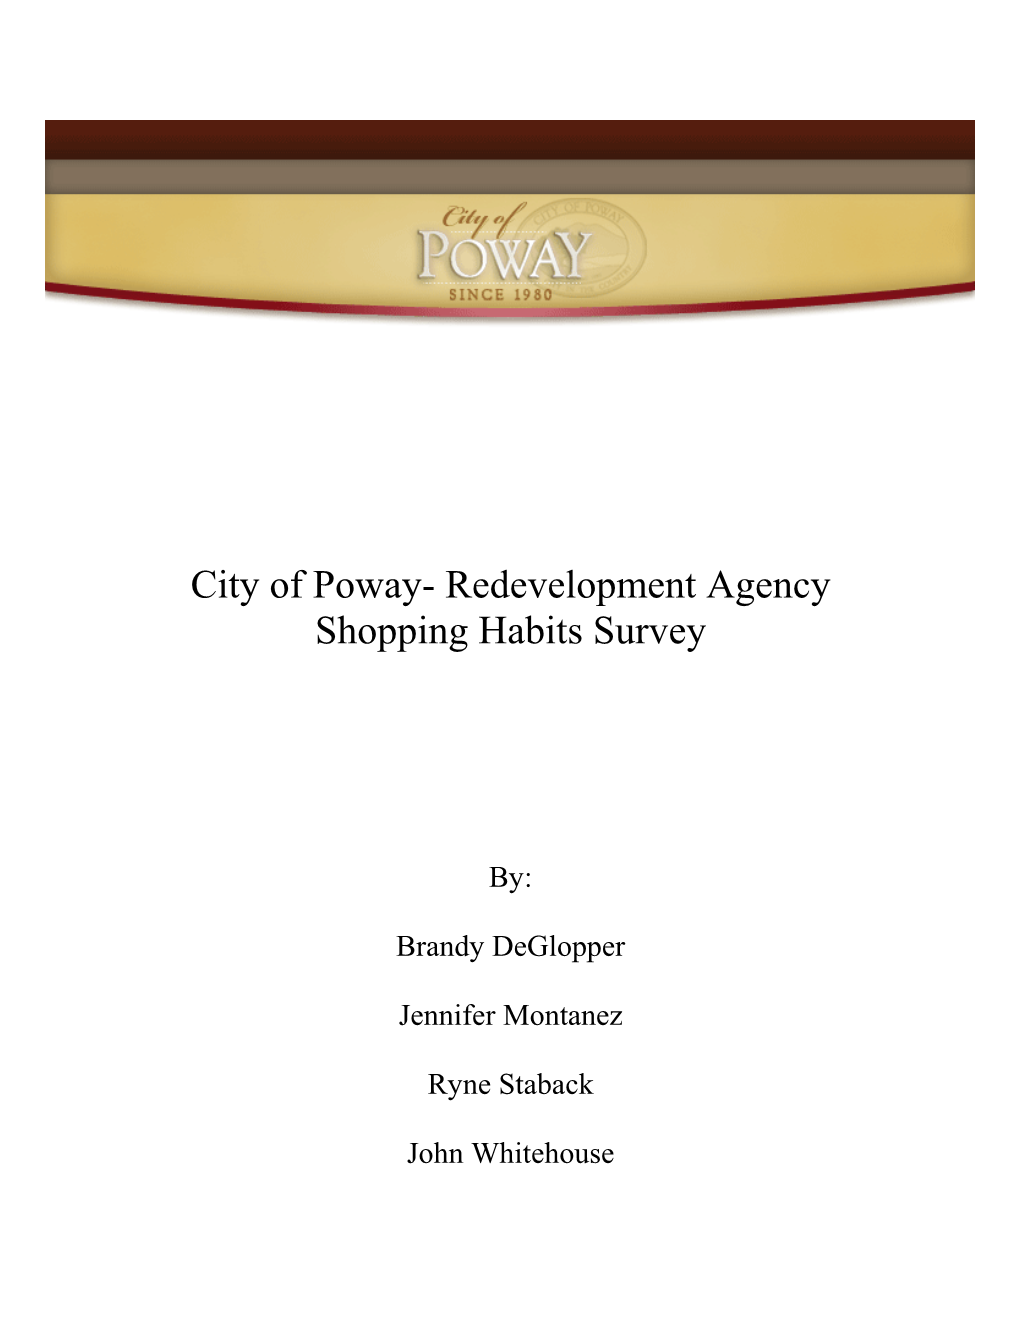 Redevelopment Agency Shopping Habits Survey